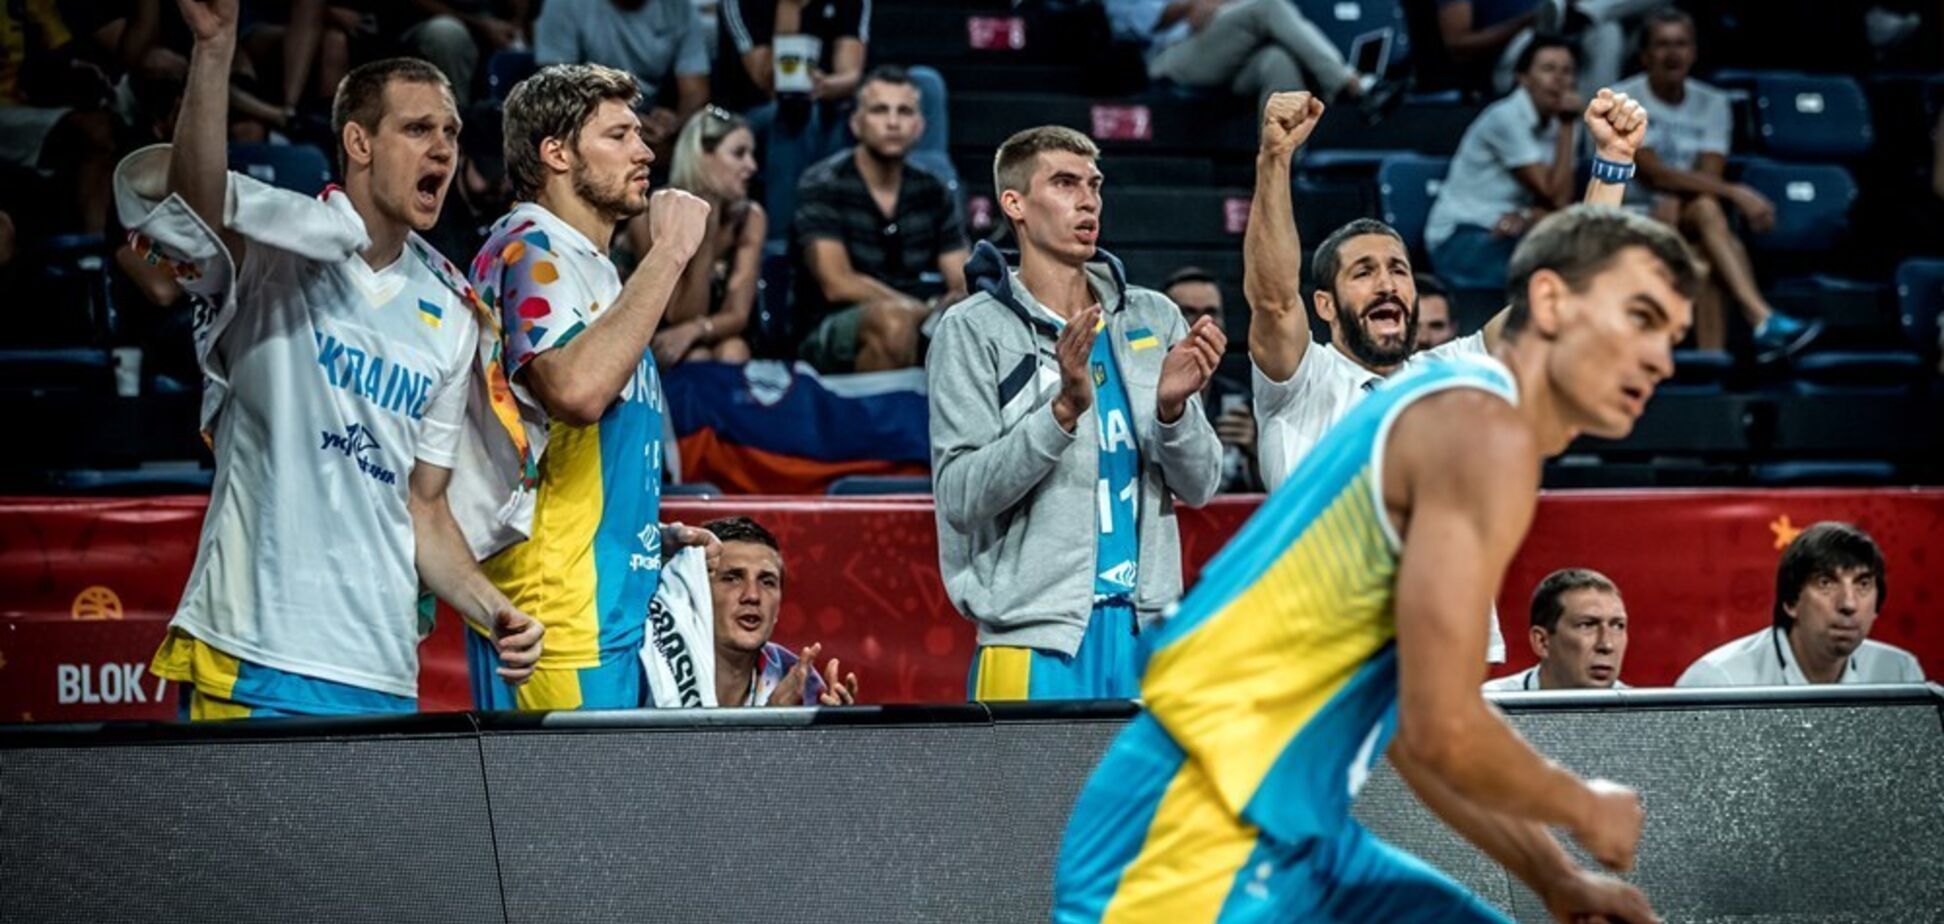 ФБУ випустила яскраве промо матчу КМ-2019 Україна - Словенія